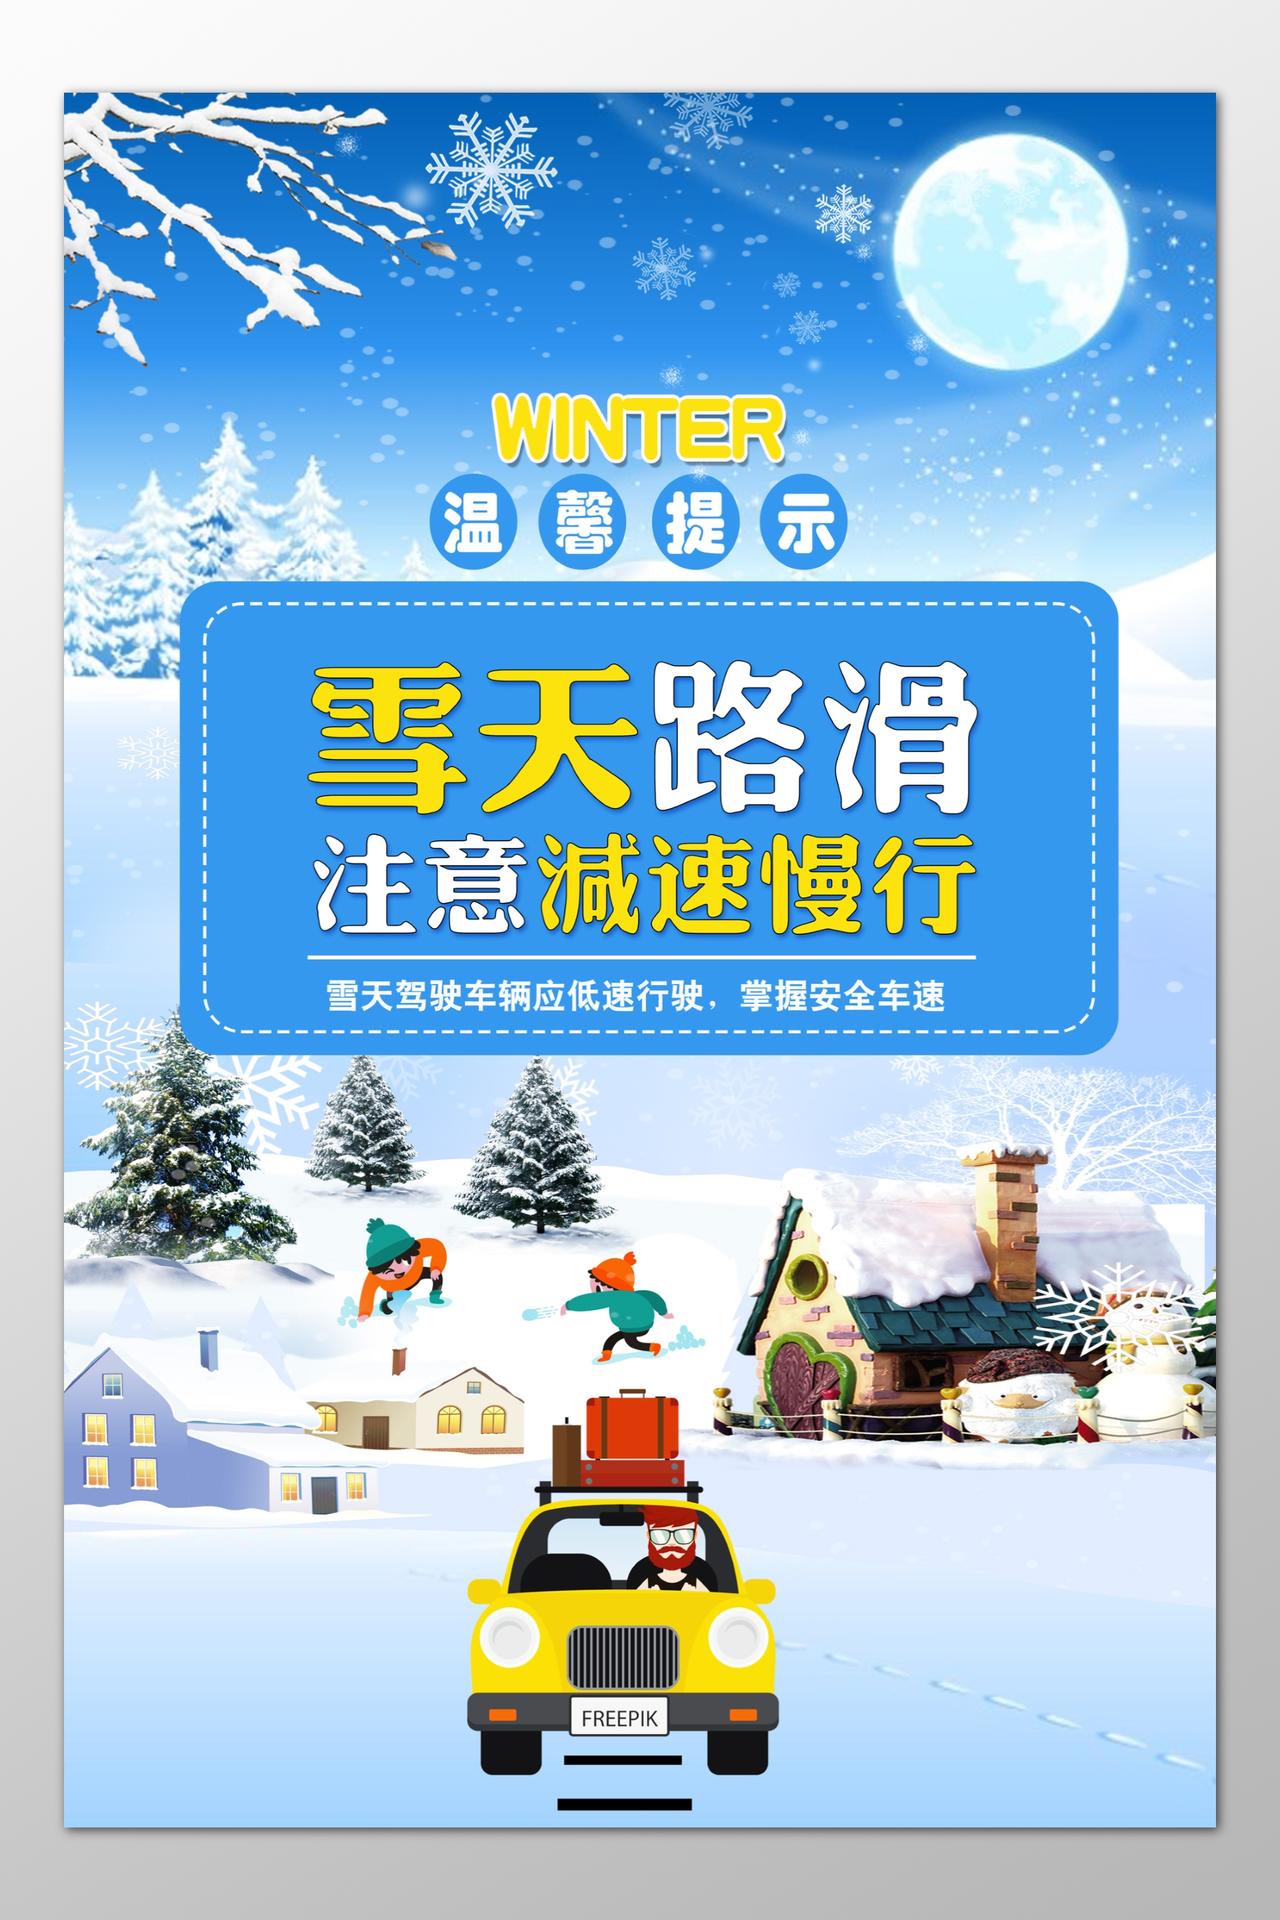 温馨提示雪天路滑减速慢性安全车速卡通海报模板